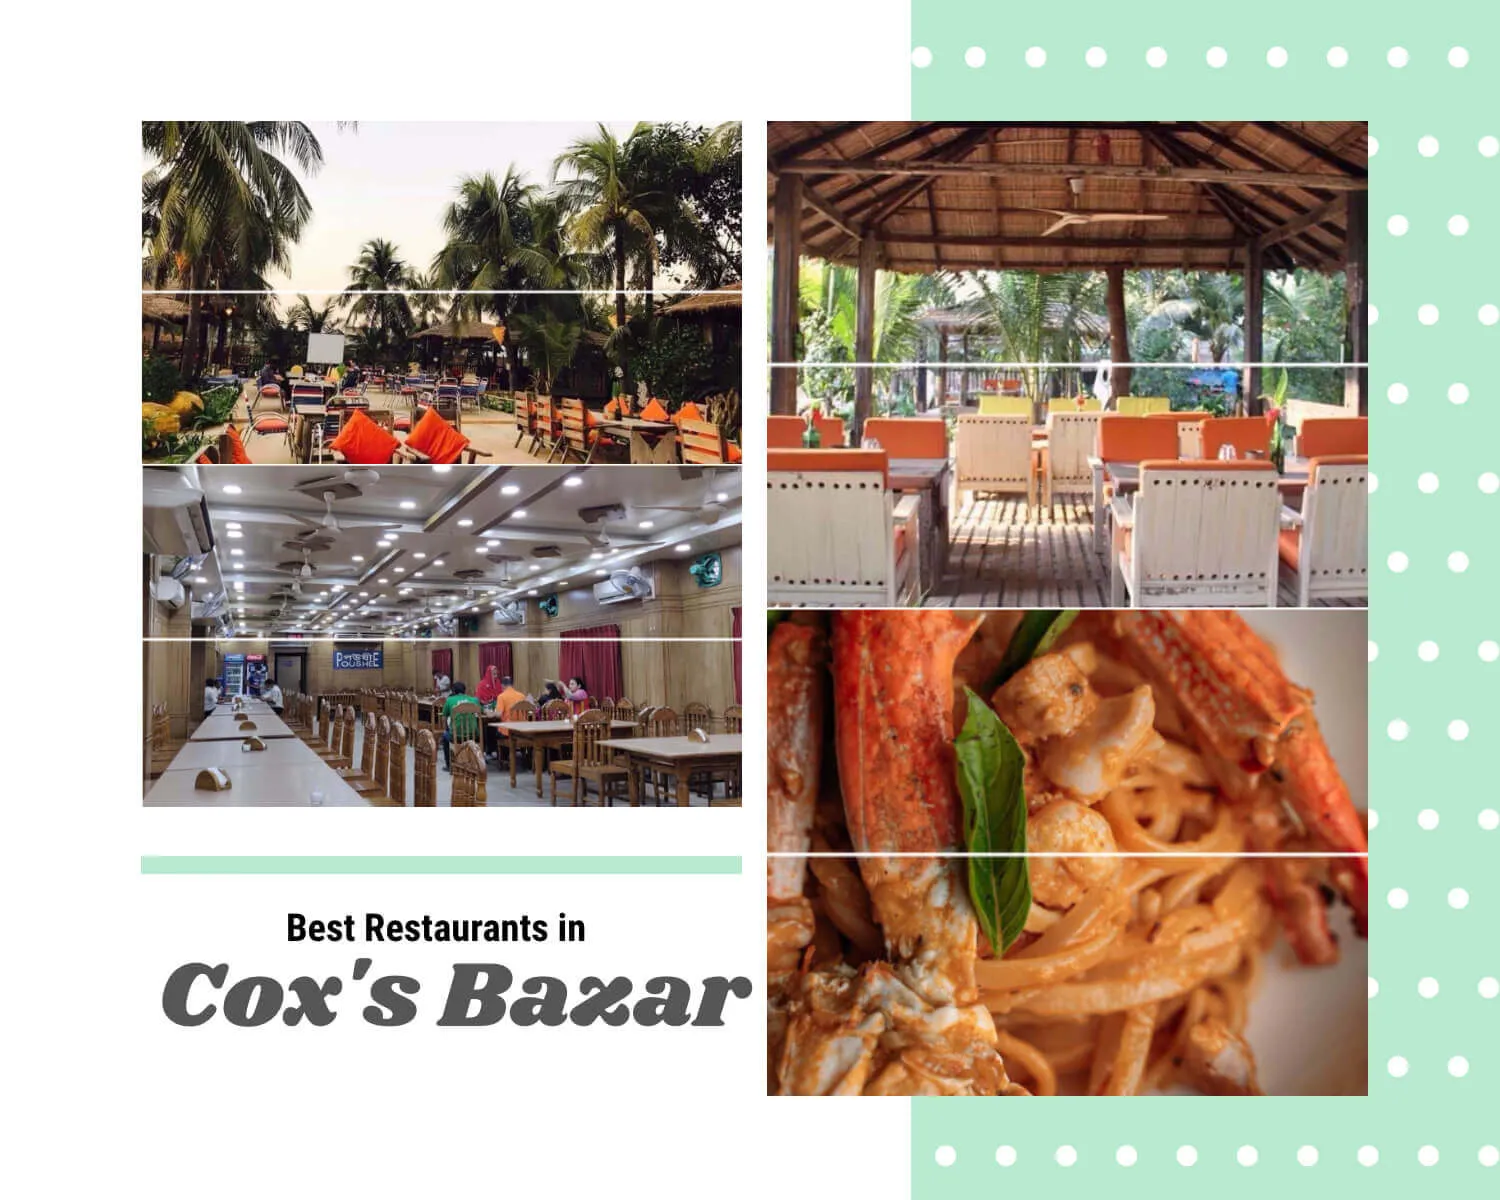 The 11 Best Restaurants in Cox's Bazar